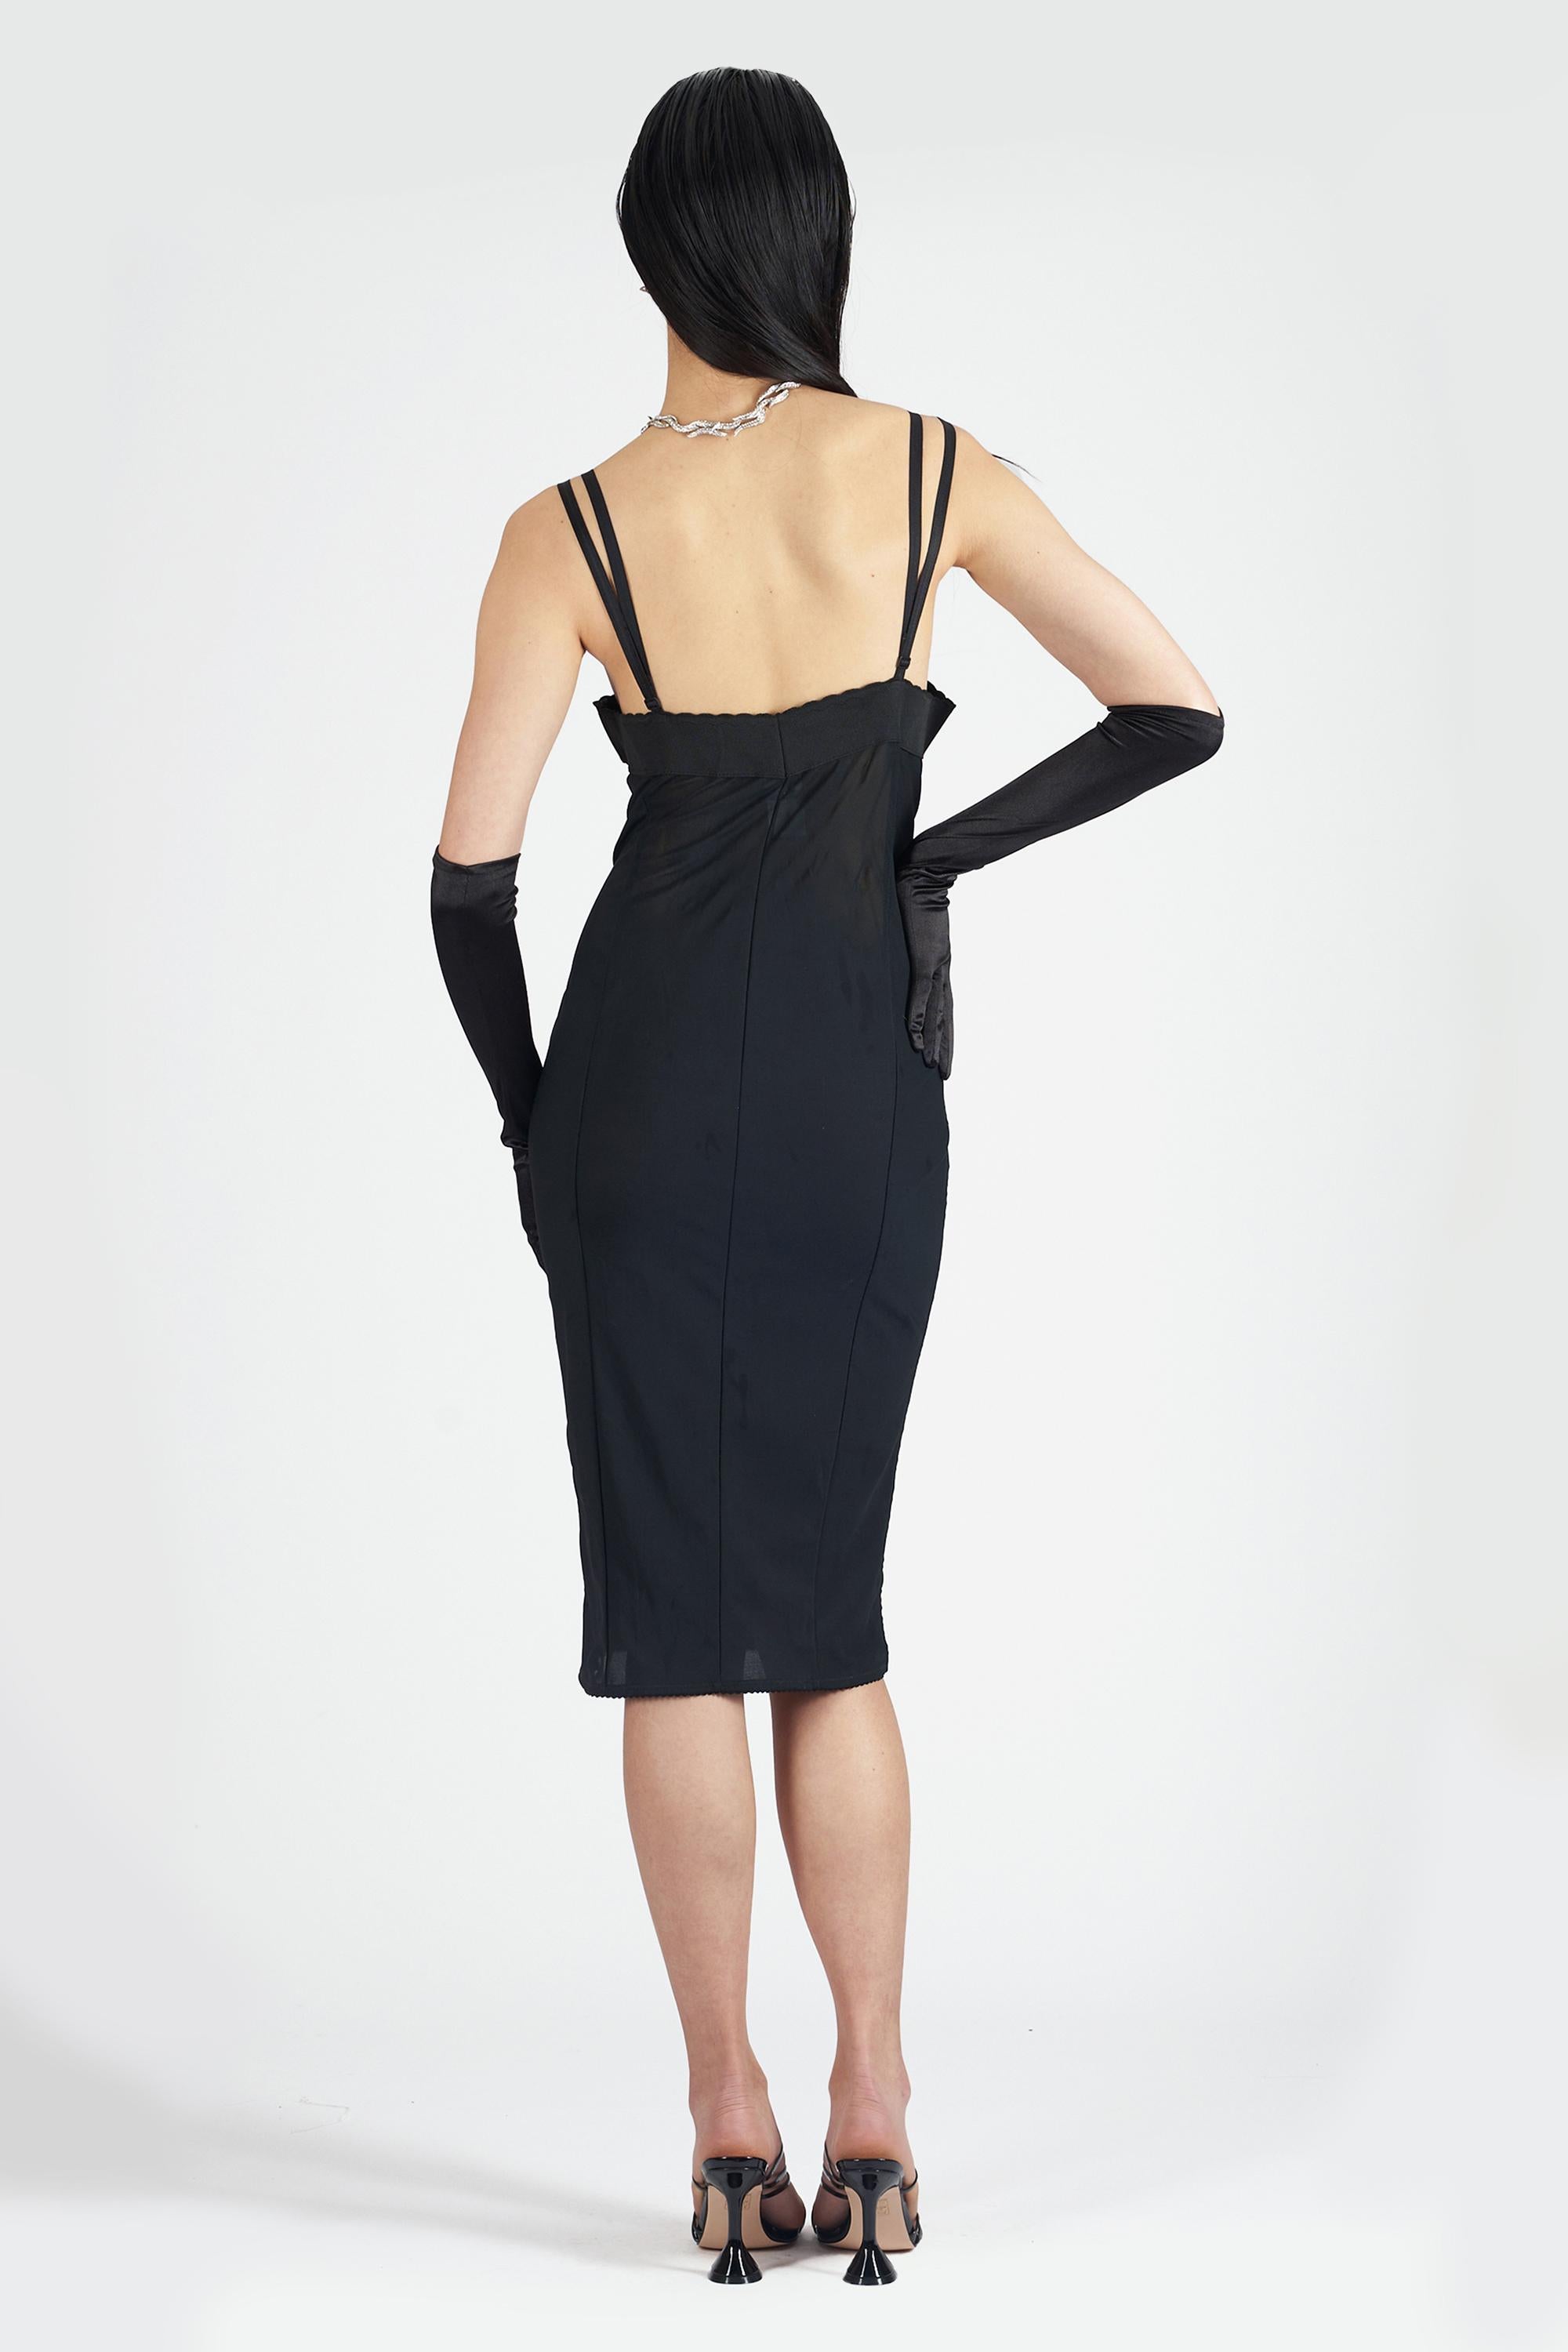 Nous avons le plaisir de vous présenter cette robe corset en dentelle noire Dolce & Gabbana 2003. Elle est dotée d'un laçage noir sur le devant qui se ferme par des crochets et d'une longueur mini. Vintage, en excellent état.
Authenticité